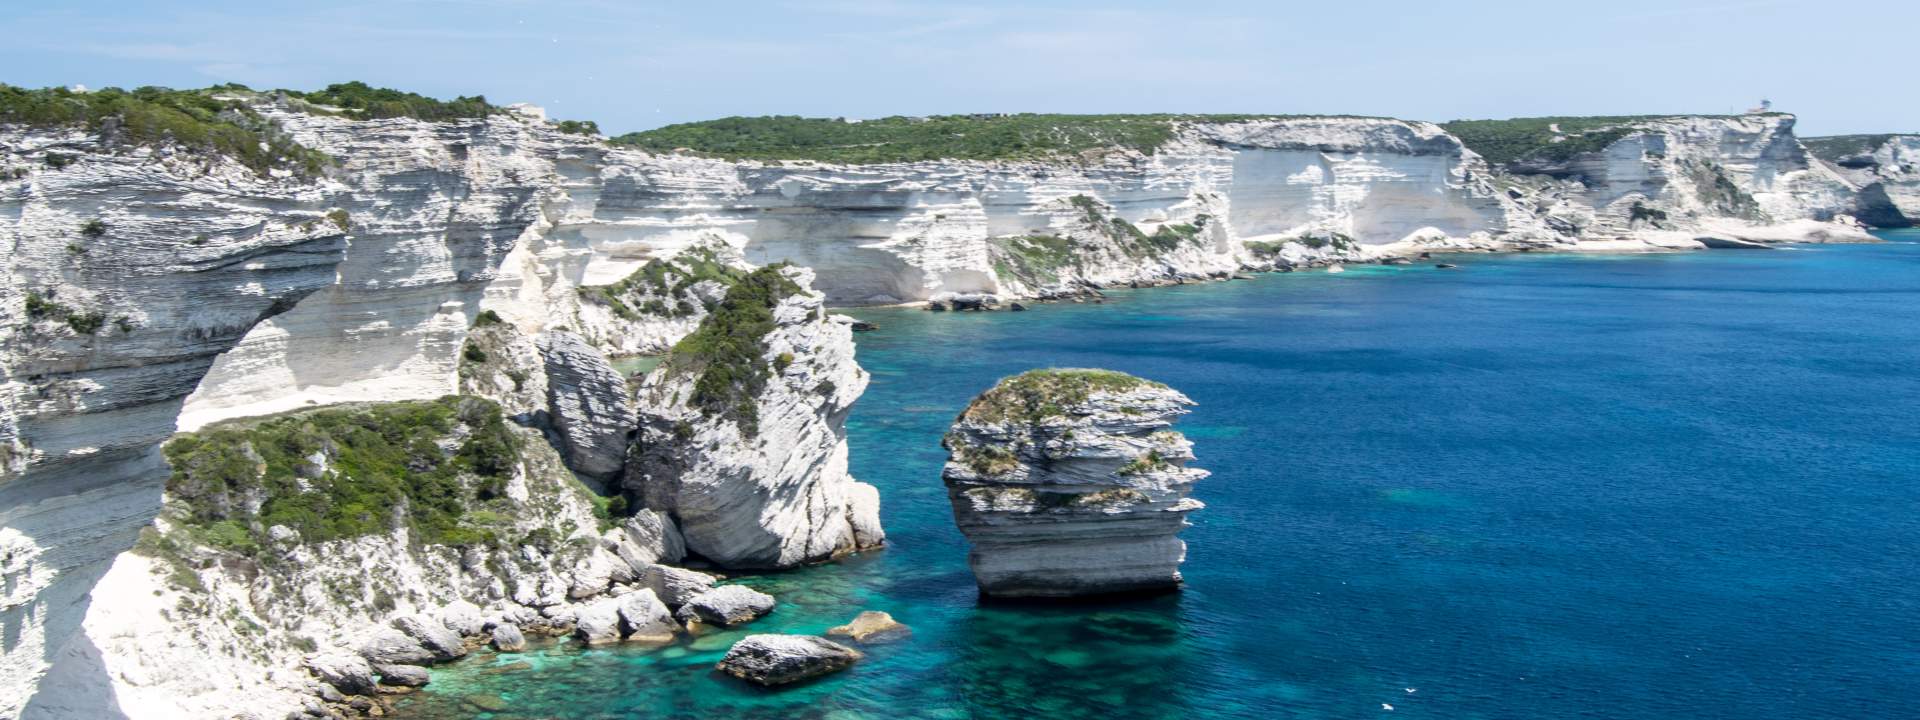 La croisière idéale pour découvrir le sud de la Corse en catamaran